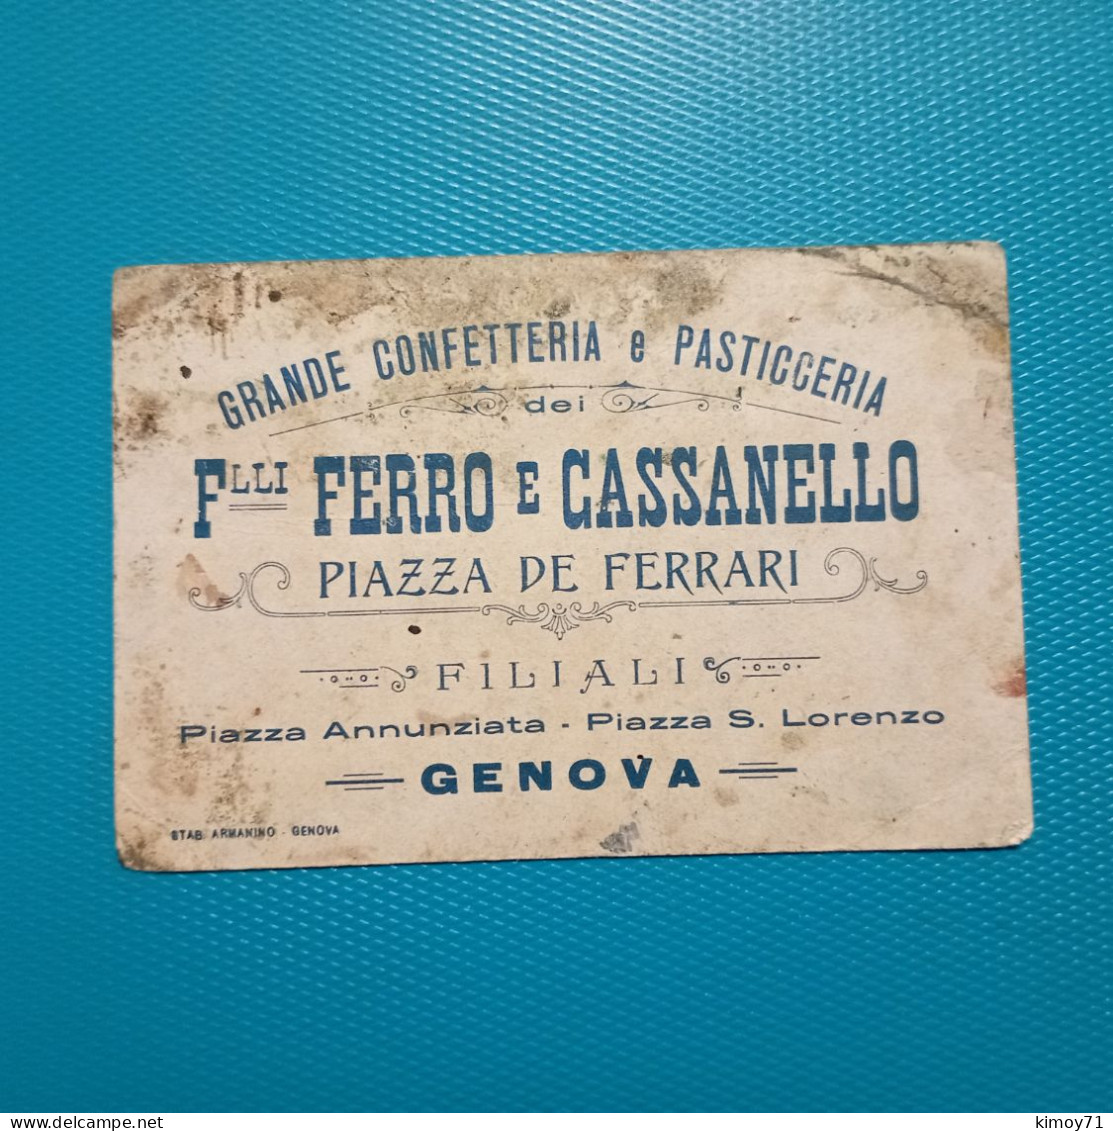 Cartolina Pubblicitaria Grande Confetteria E Pasticceria Figli Ferro E Cassanello - Genova. - Advertising